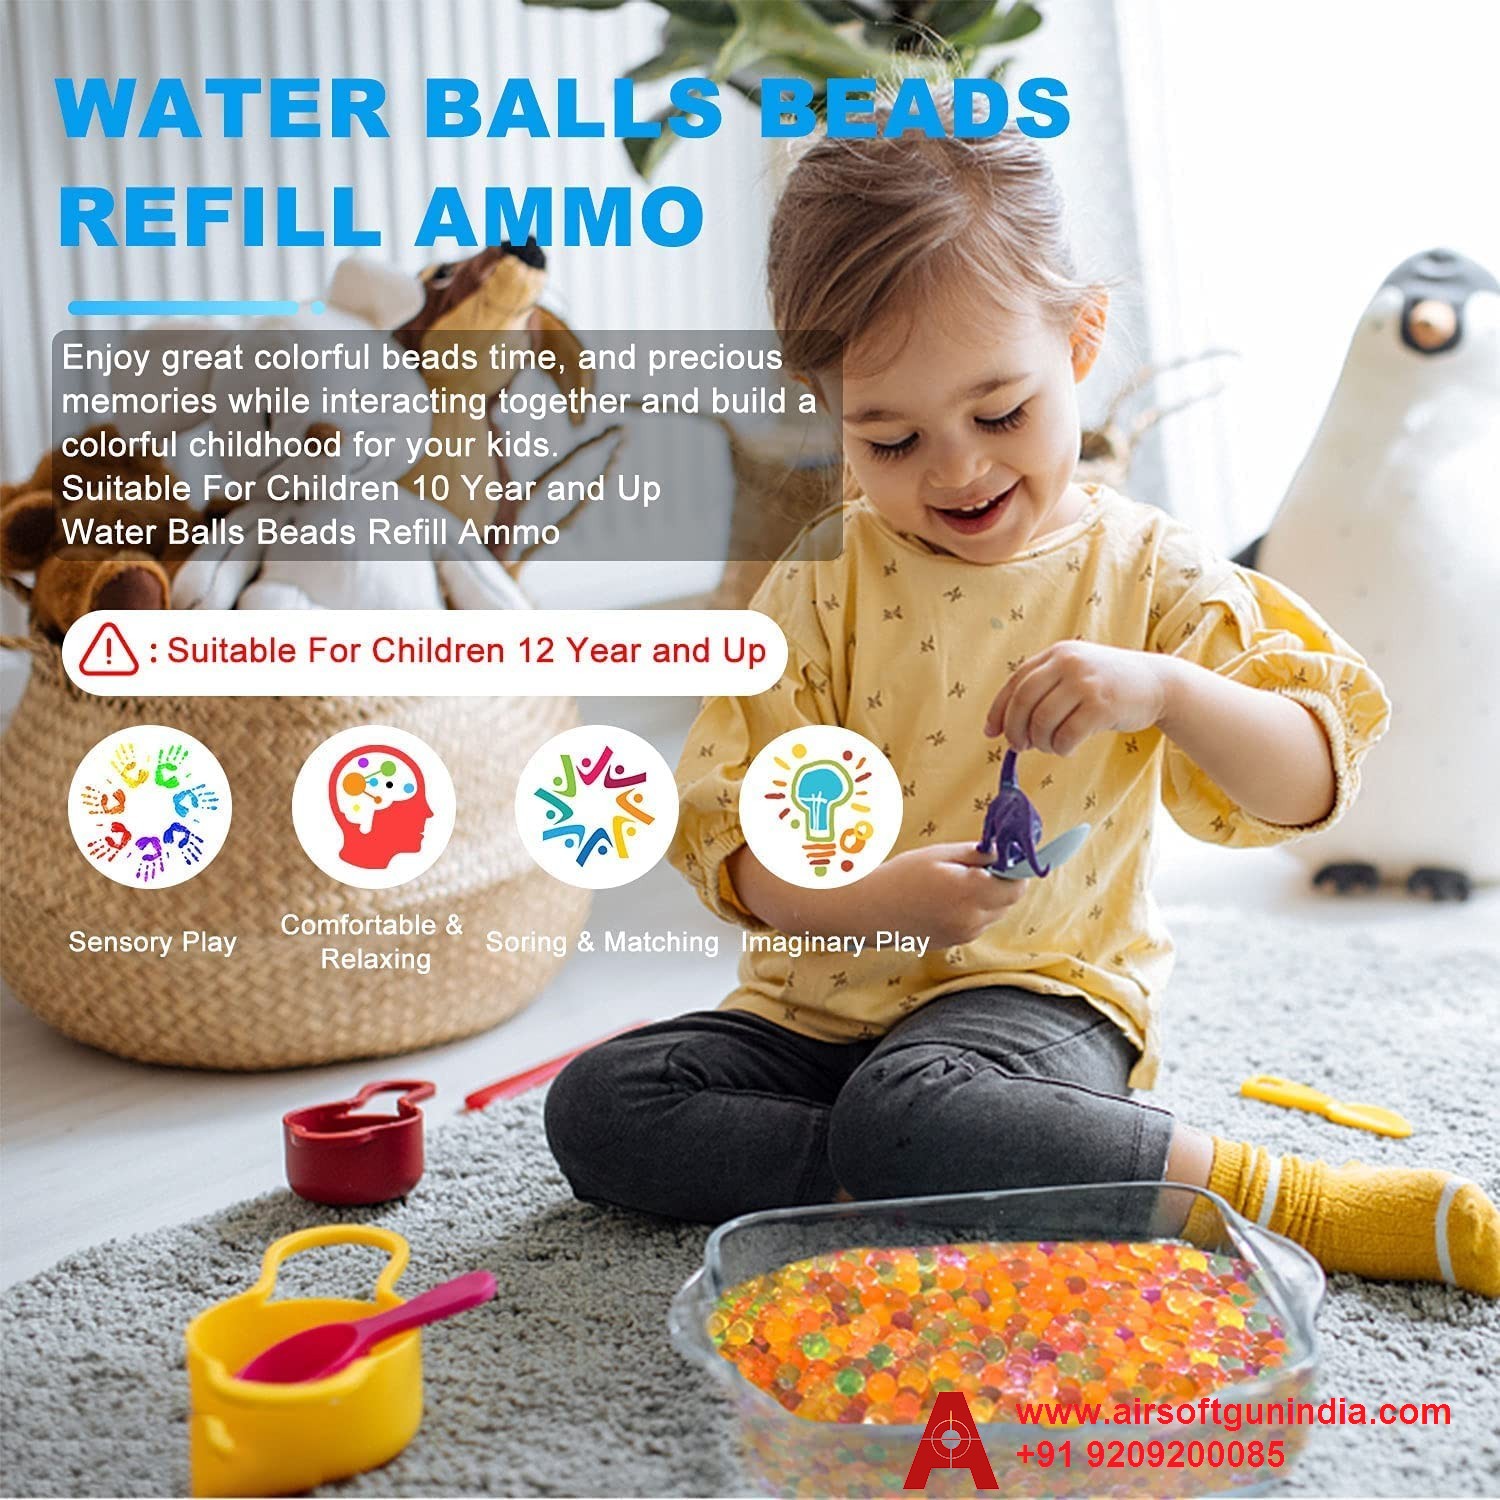 Fresh Gel Blaster Ammo Water Beads Gel Ball 4,000 Pcs 7-8mm, Water Based Gel Balls, Non-Toxic